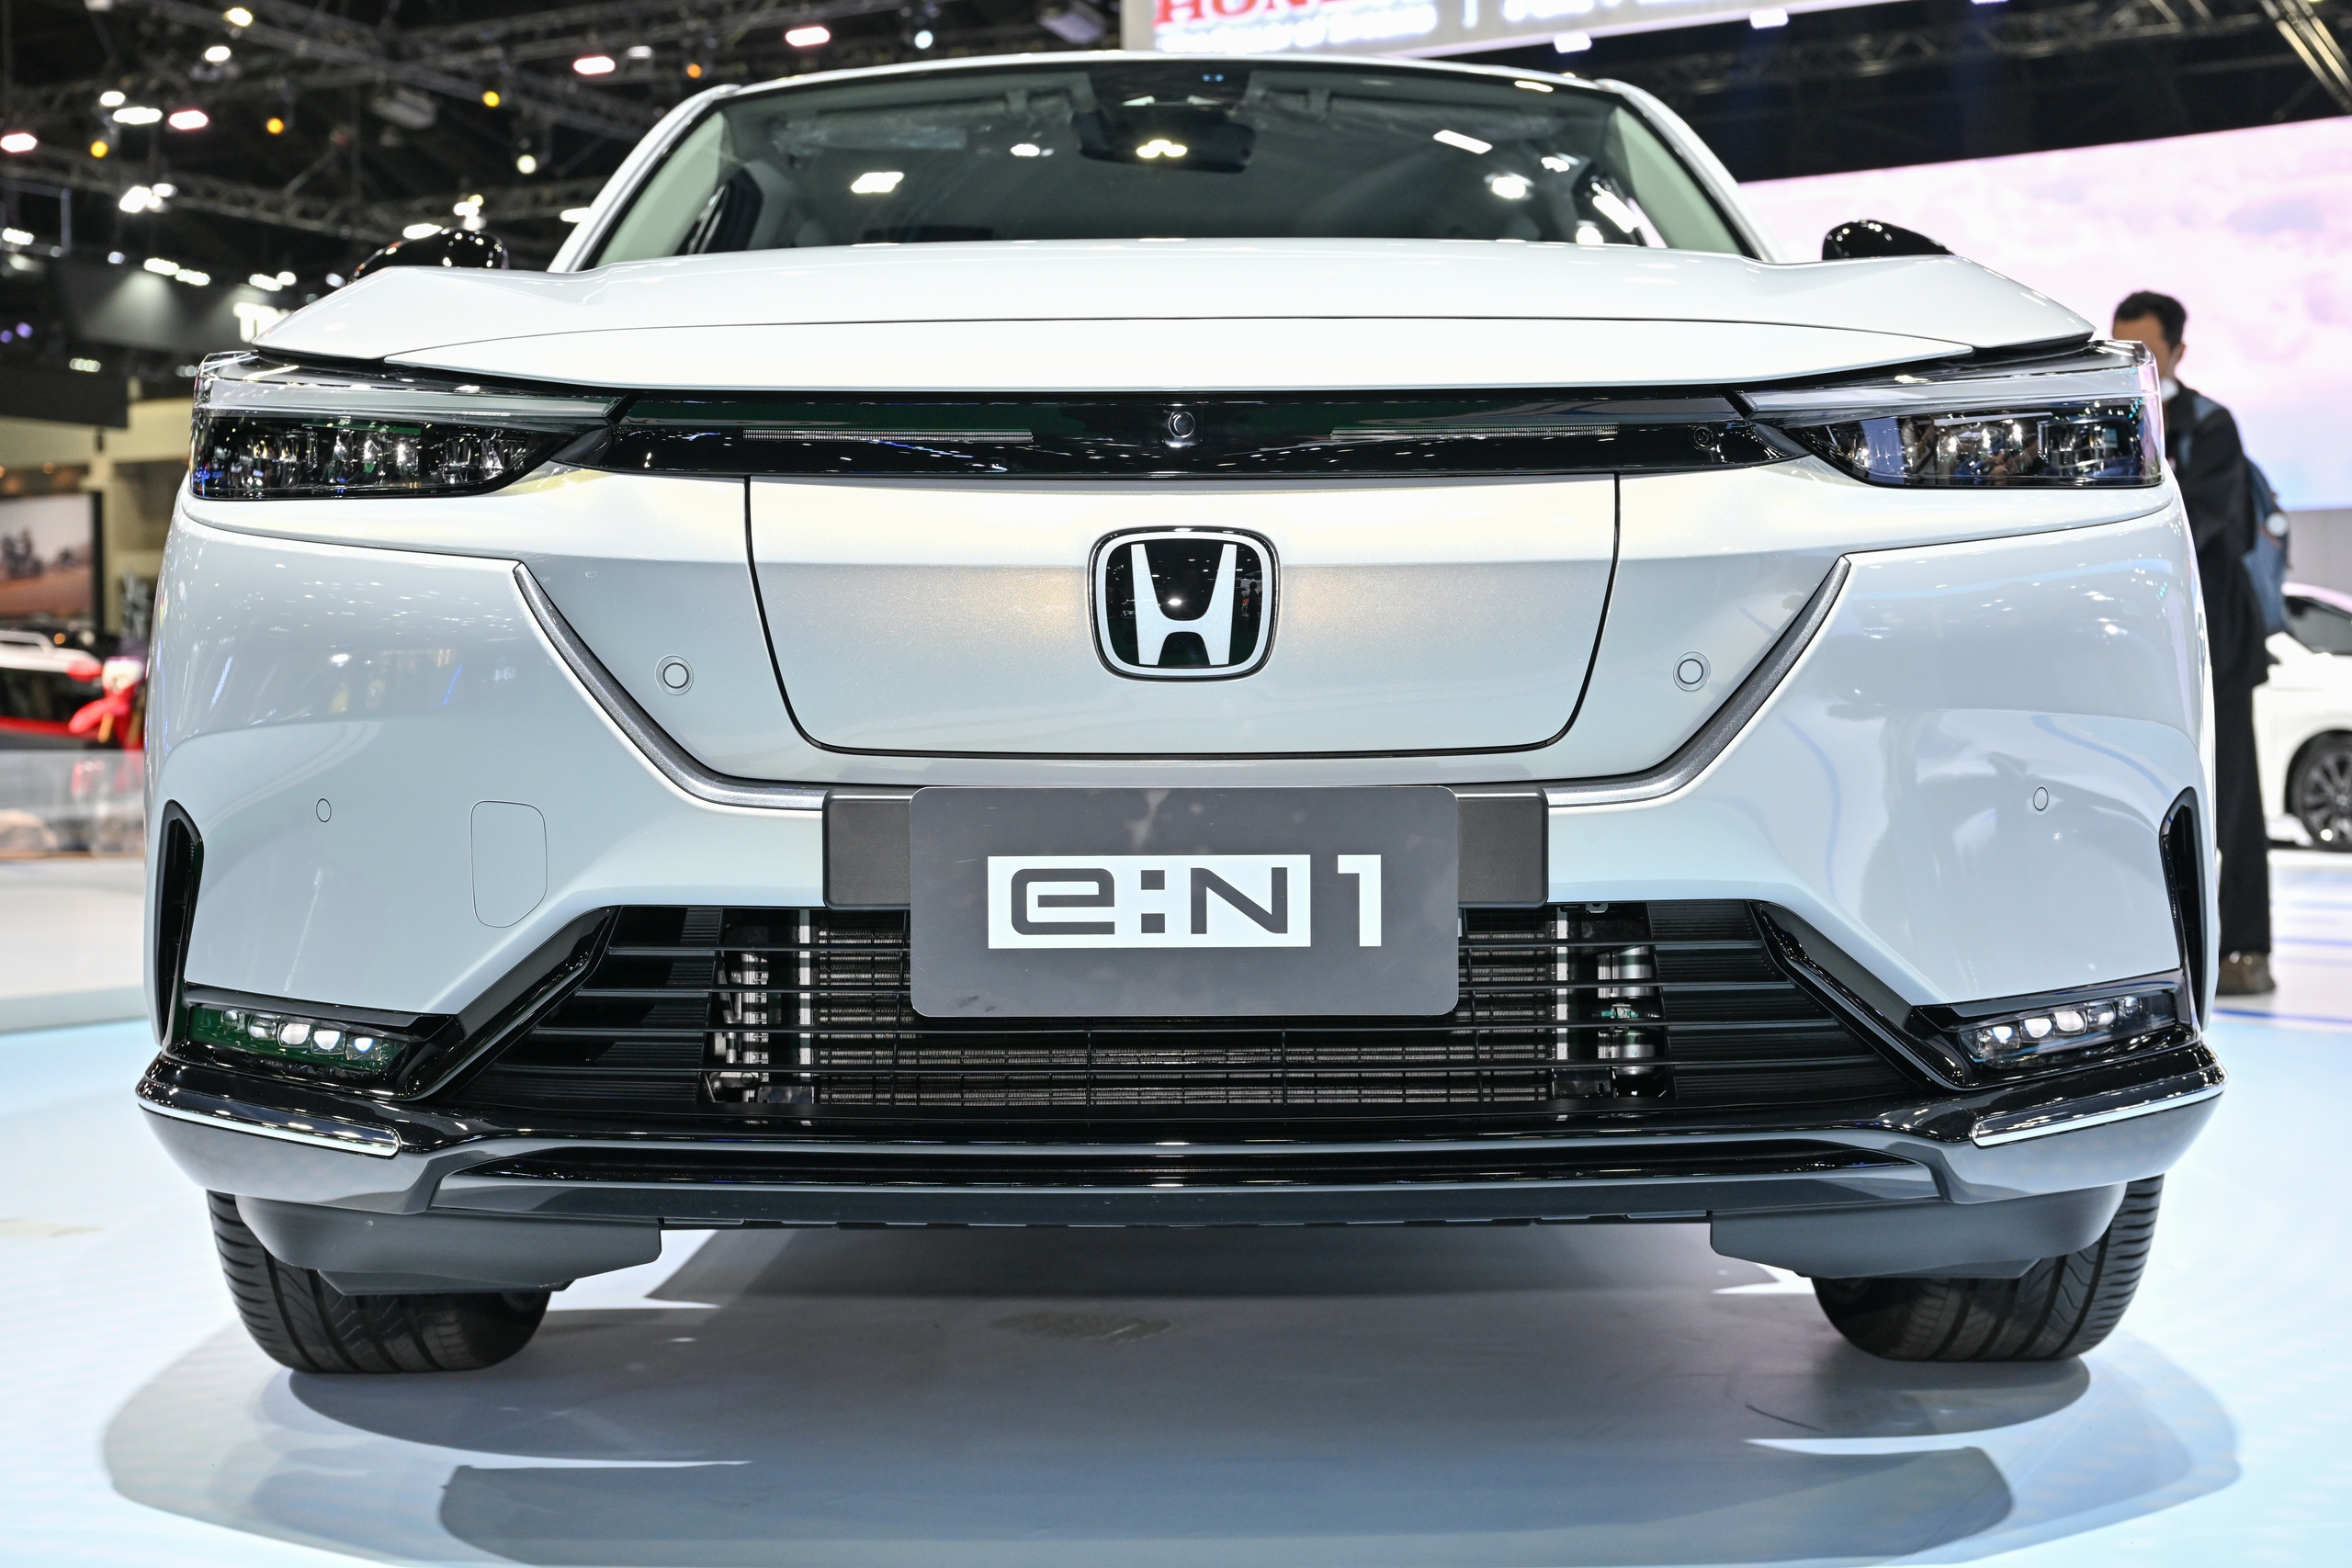 Chi tiết Honda HR-V thuần điện: Nhiều tiện nghi, một lần sạc đi được 500km, đi Hà Nội - Hạ Long rồi về vẫn thừa - ảnh 5